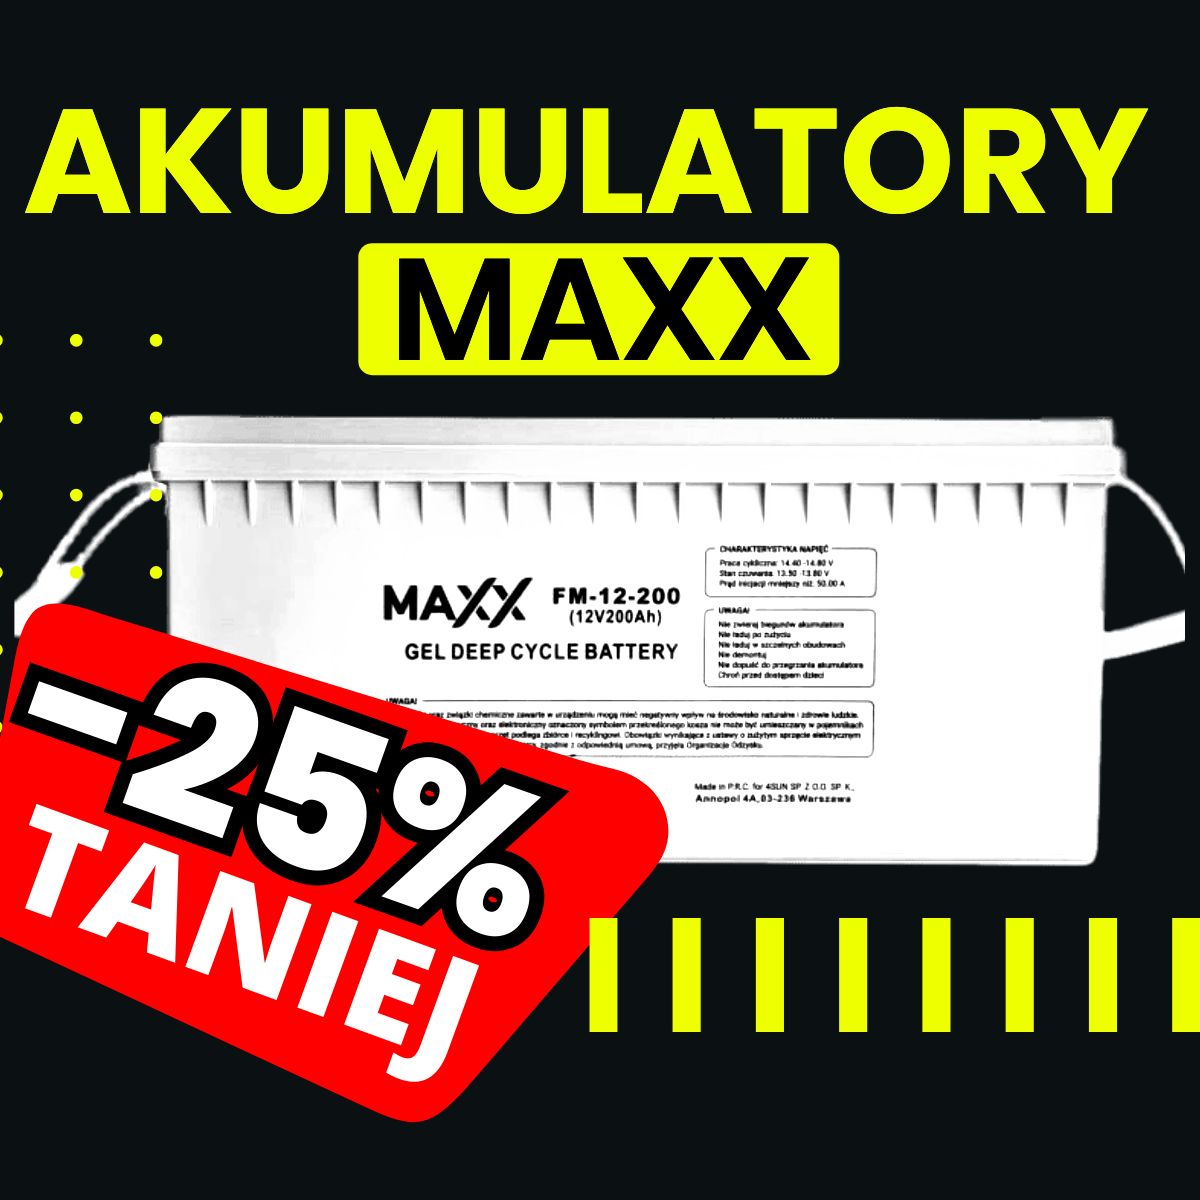 Akumulatory żelowe MAXX -25% TANIEJ!